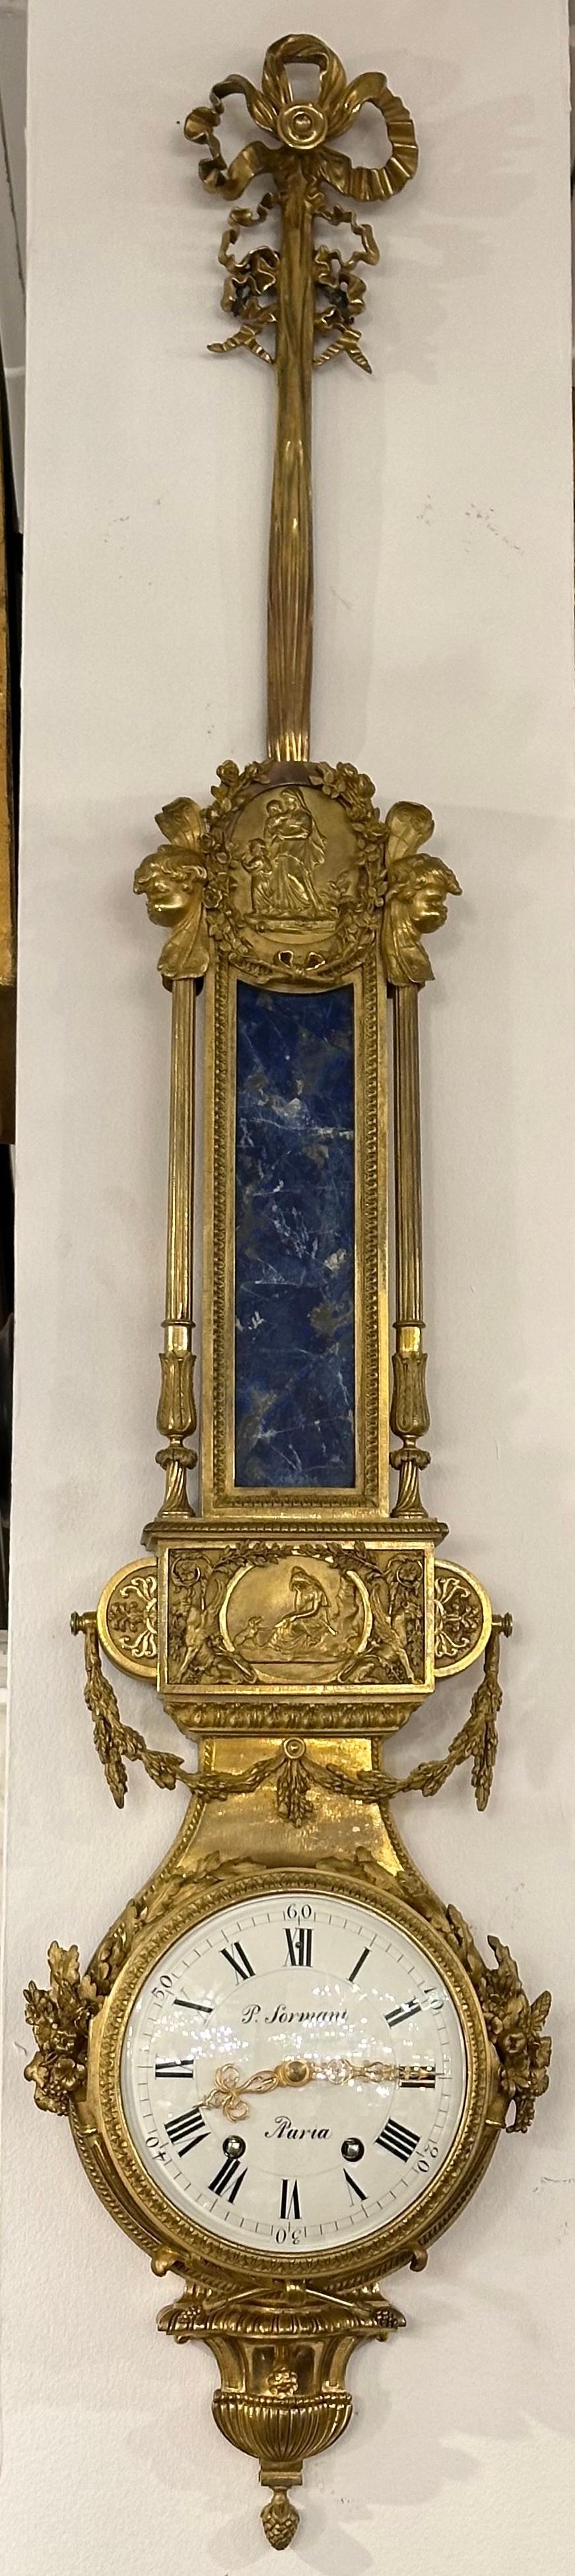 Elegante Wanduhr von Paul Sormani, aus blauem Lapislazuli und vergoldetem Bronze-Ormolu. 
 Paul Sormani war ein berühmter französischer Möbeltischler des 19. Jahrhunderts, der für die Herstellung prächtiger Luxusmöbel im Stil Ludwigs XIV., Ludwigs